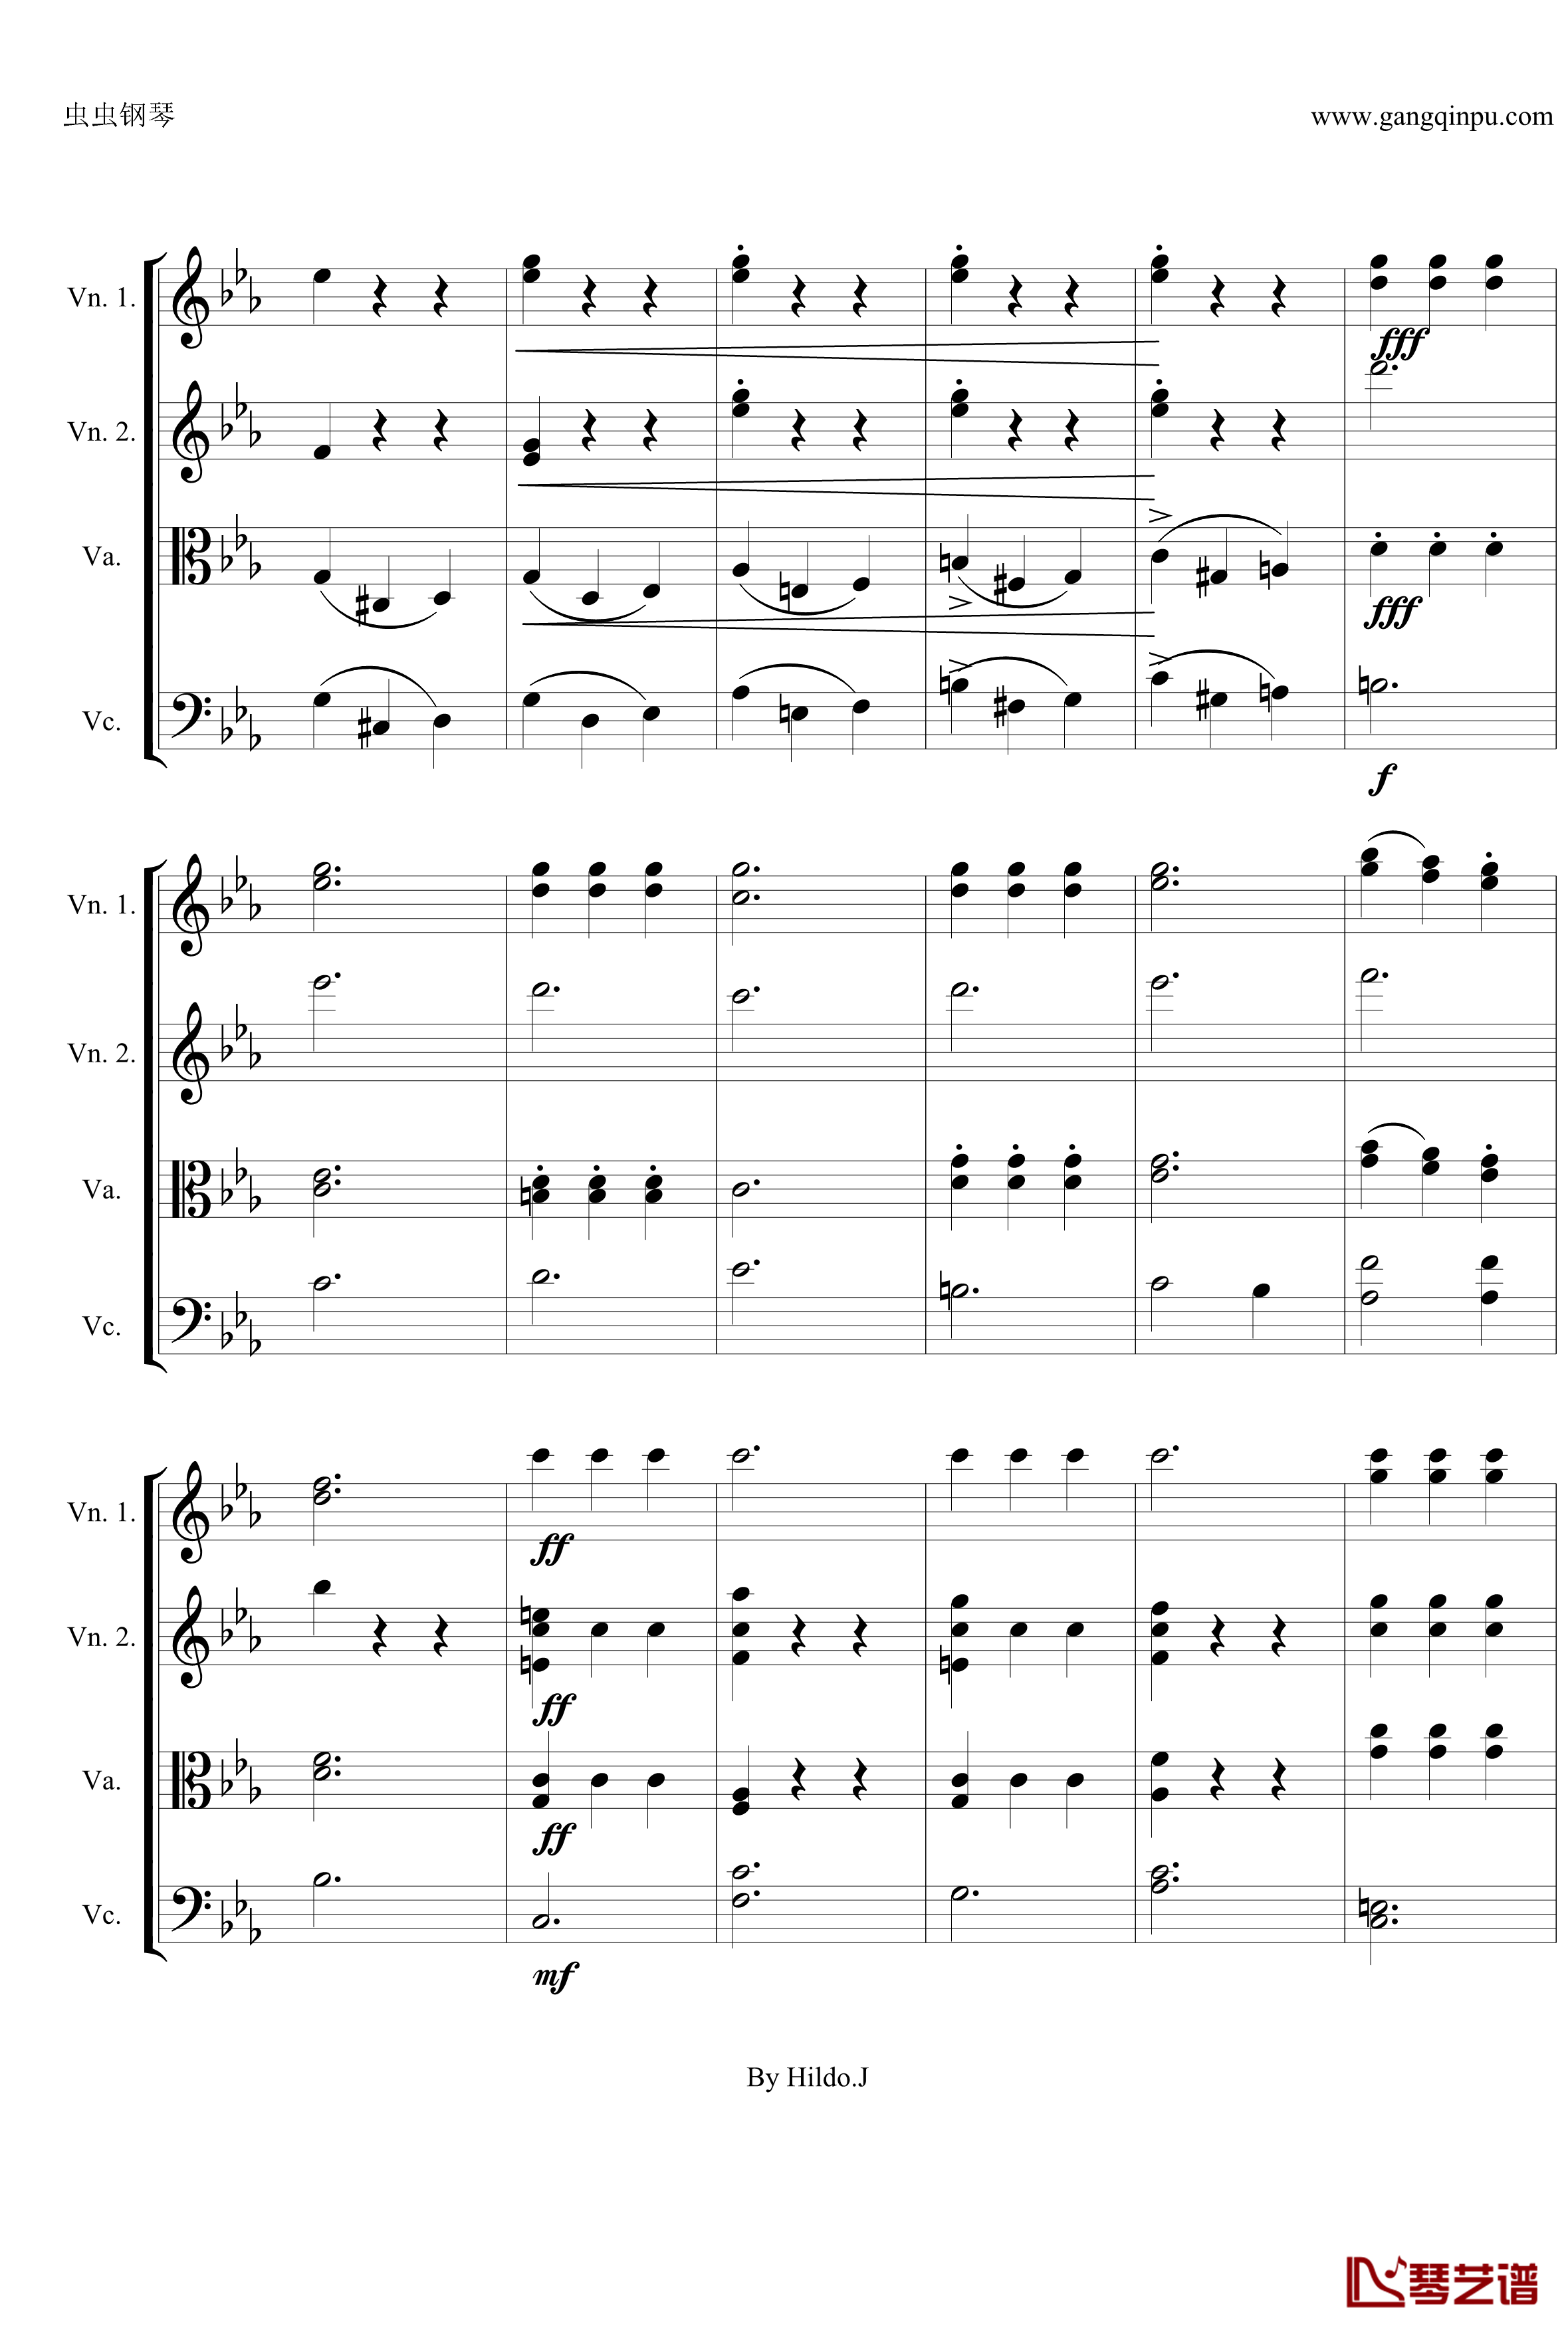 命运交响曲第三乐章钢琴谱-弦乐版-贝多芬-beethoven6